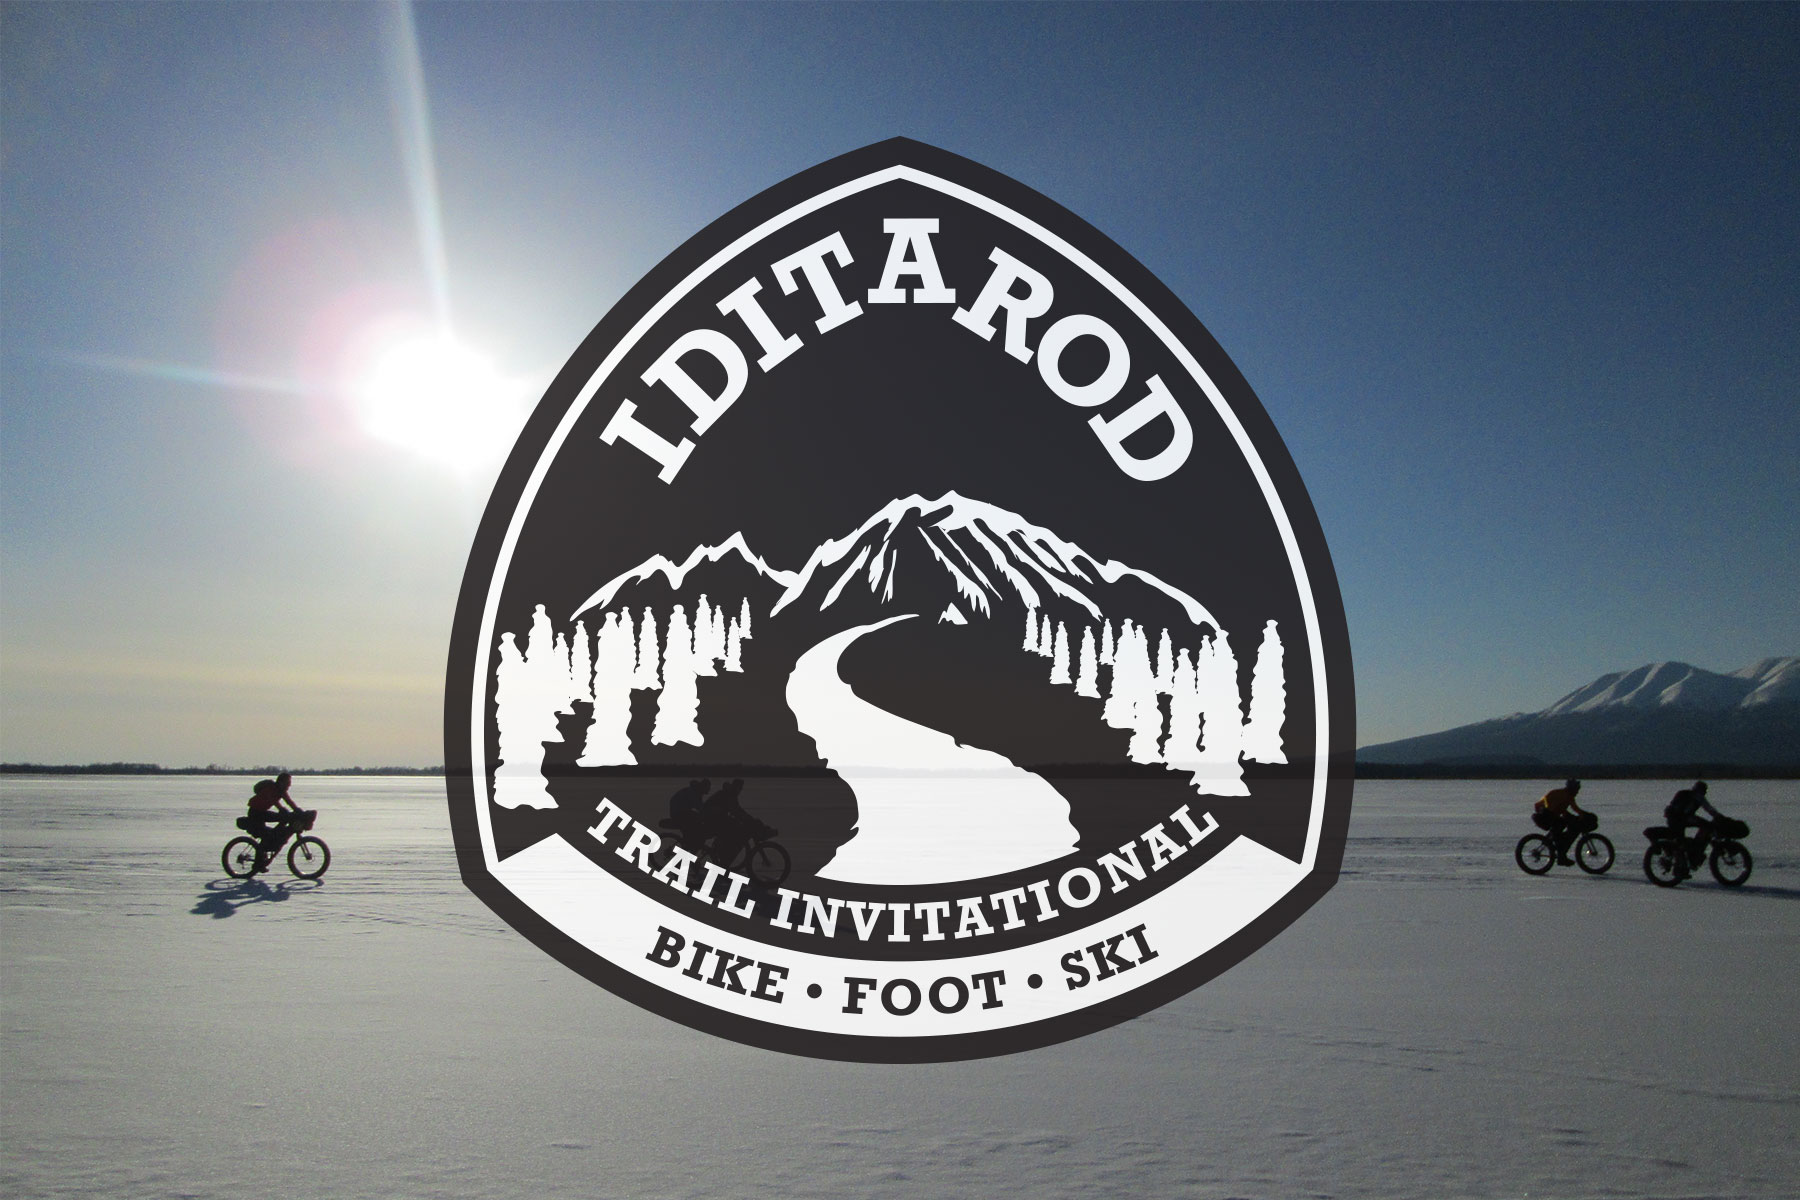 2020 Iditarod Trail Invitational